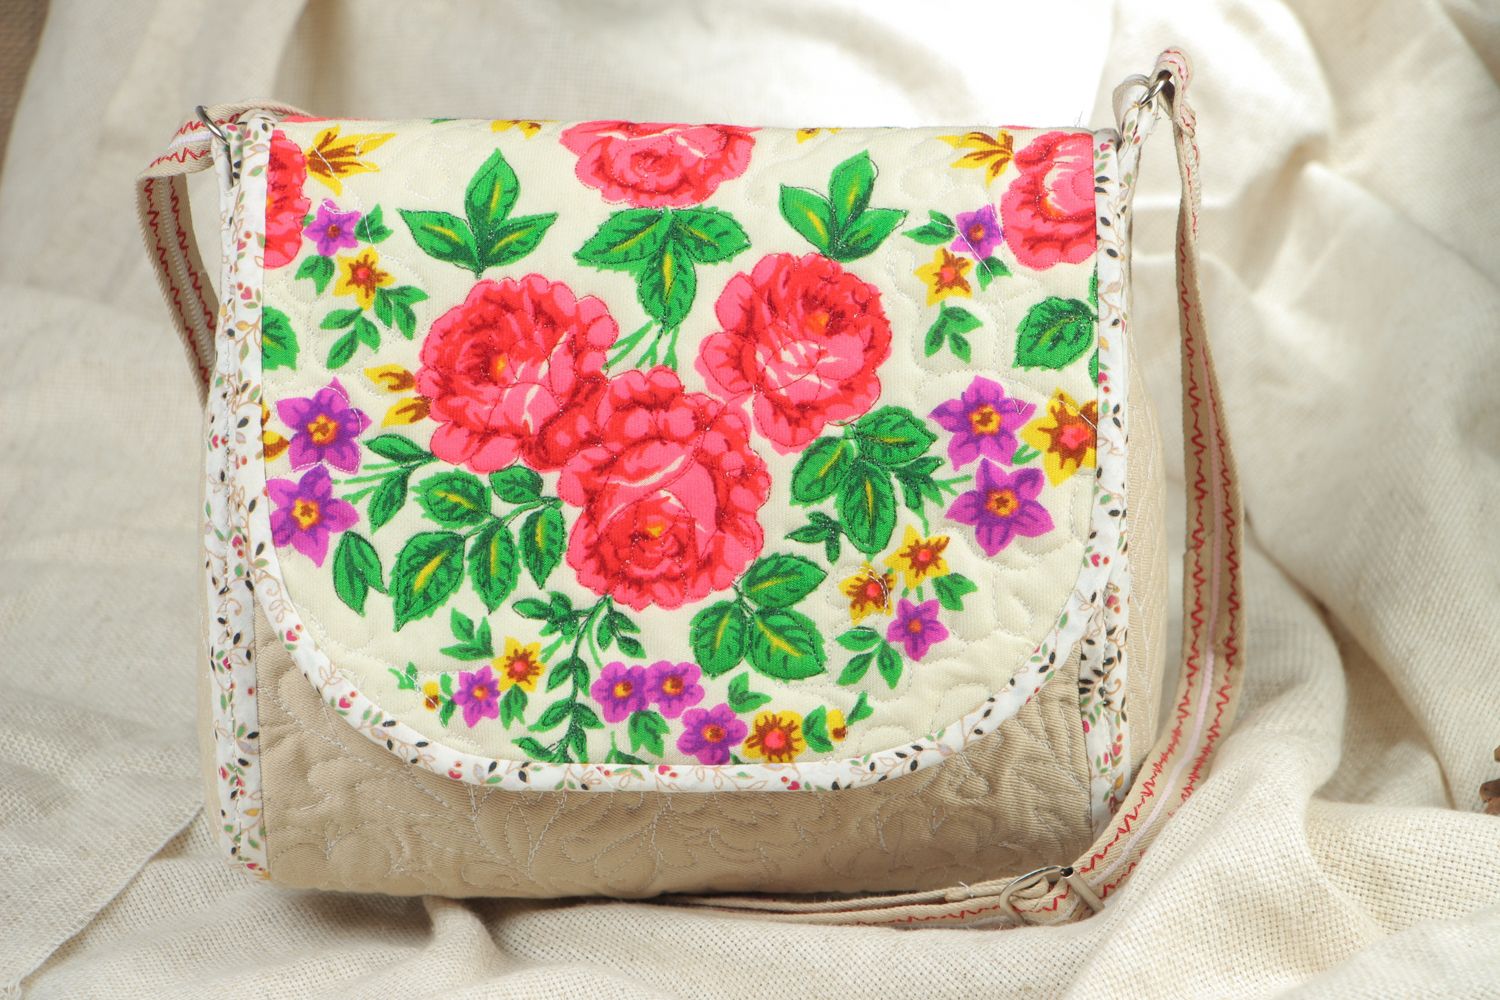 Textil Tasche mit Blumenprint foto 5